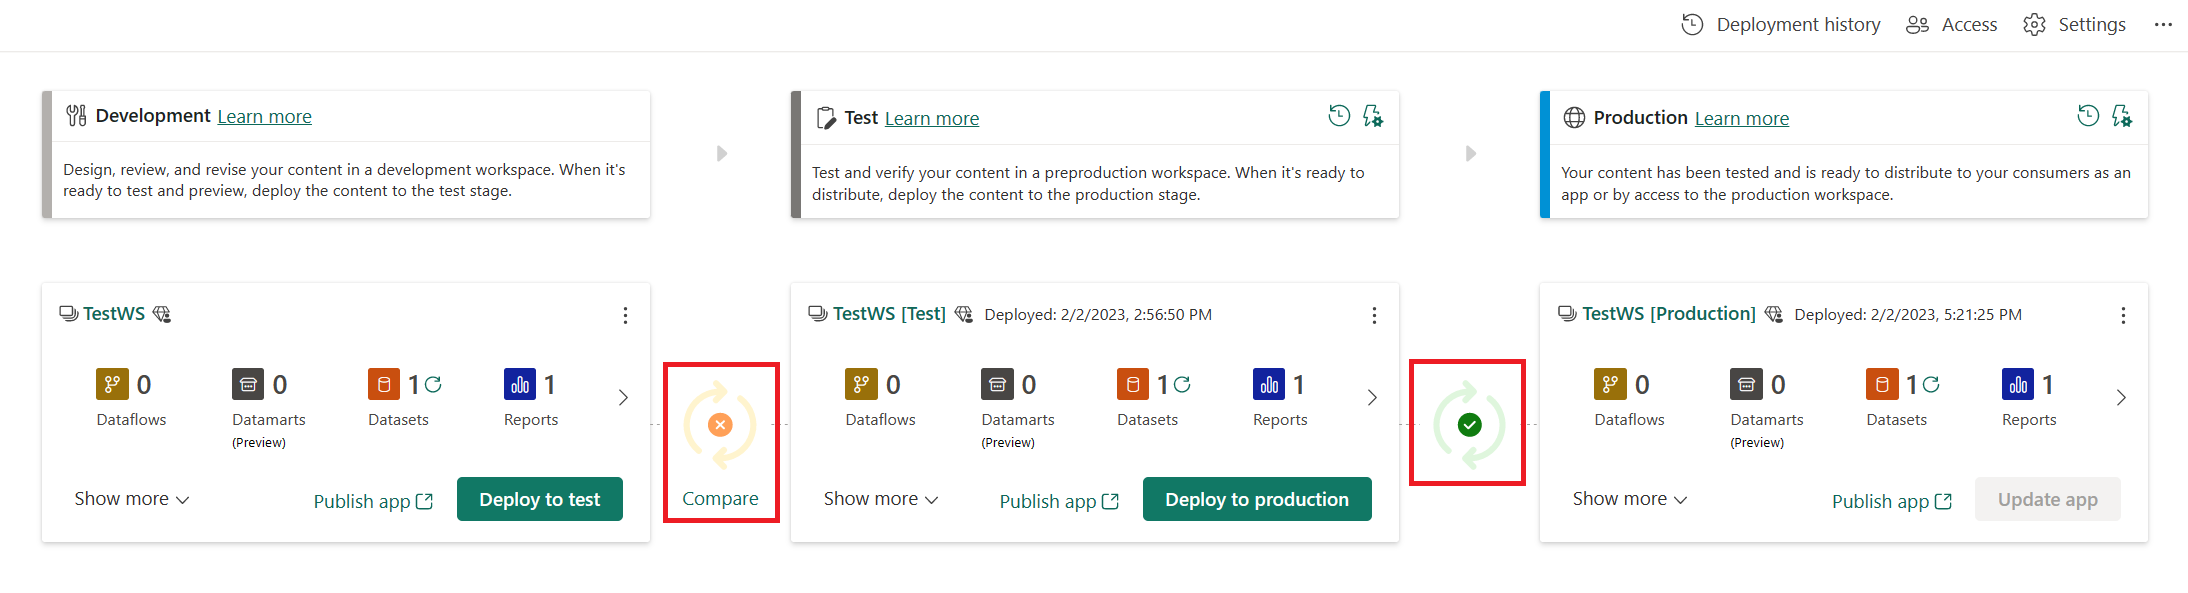 Zrzut ekranu przedstawiający trzy etapy wdrażania. Między etapami testowania i produkcji istnieje zielona kontrola między etapami testowania i produkcji a pomarańczowym X między etapami programowania i testowania.